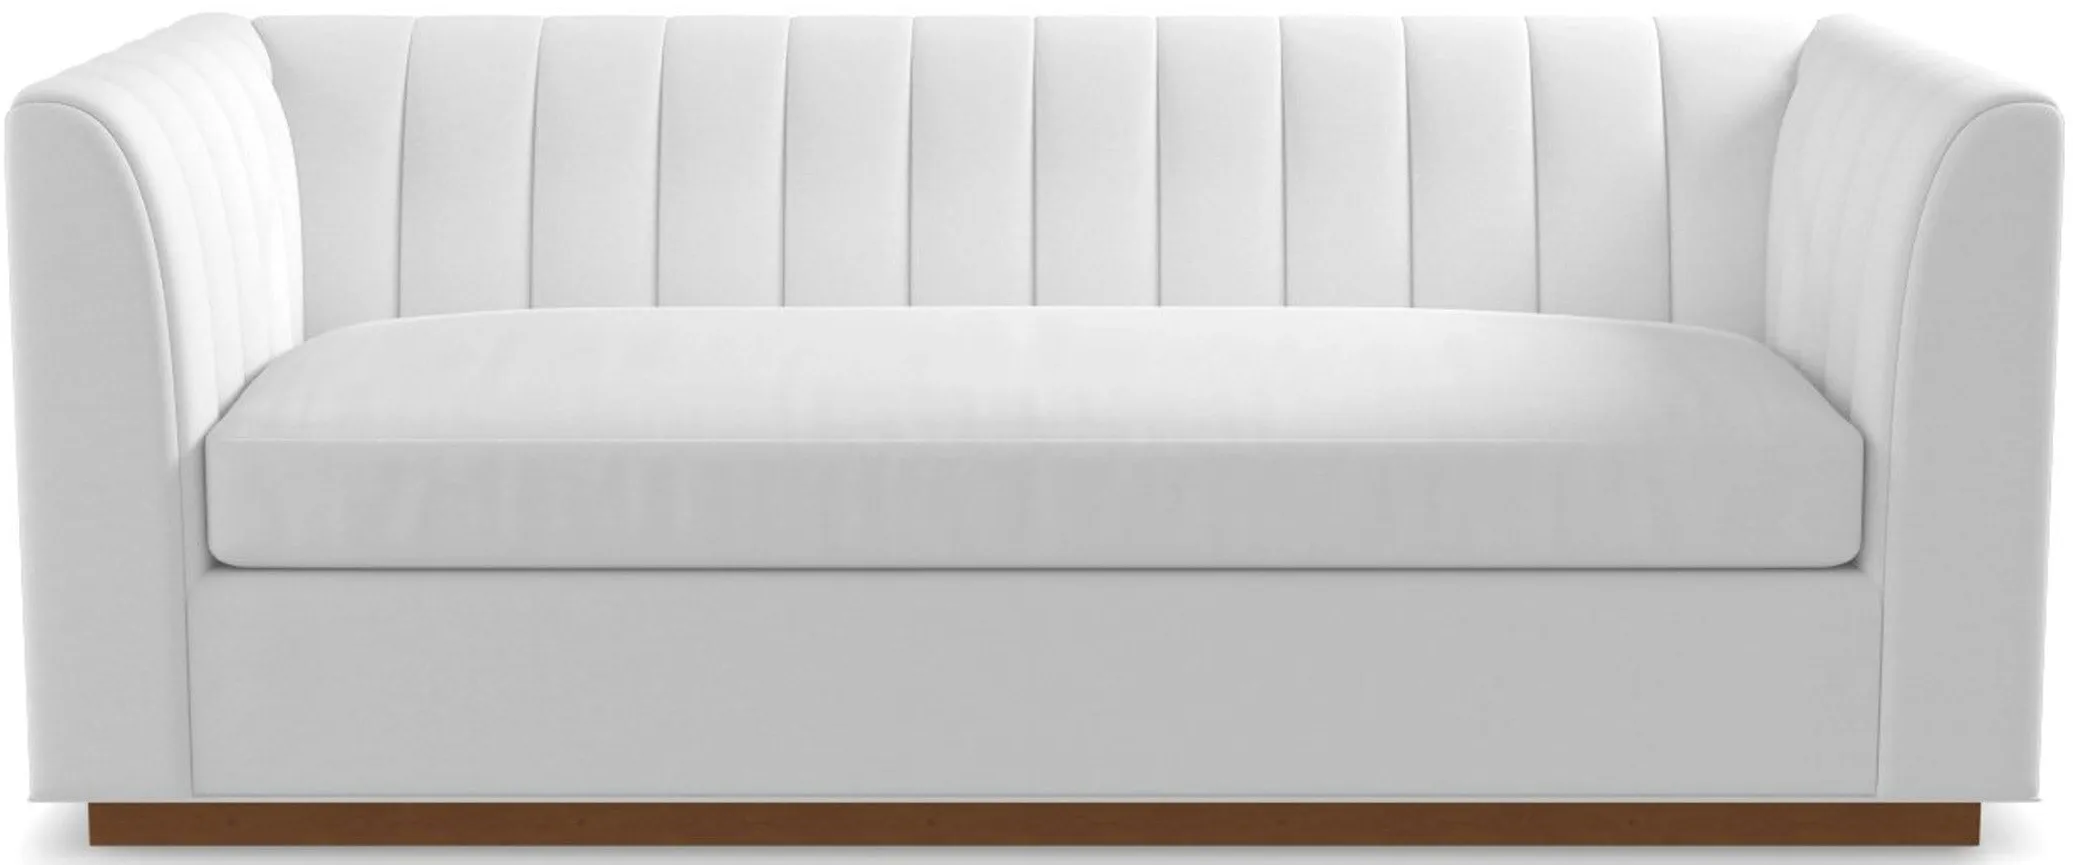 Nora Queen Size Sleeper Sofa Bed